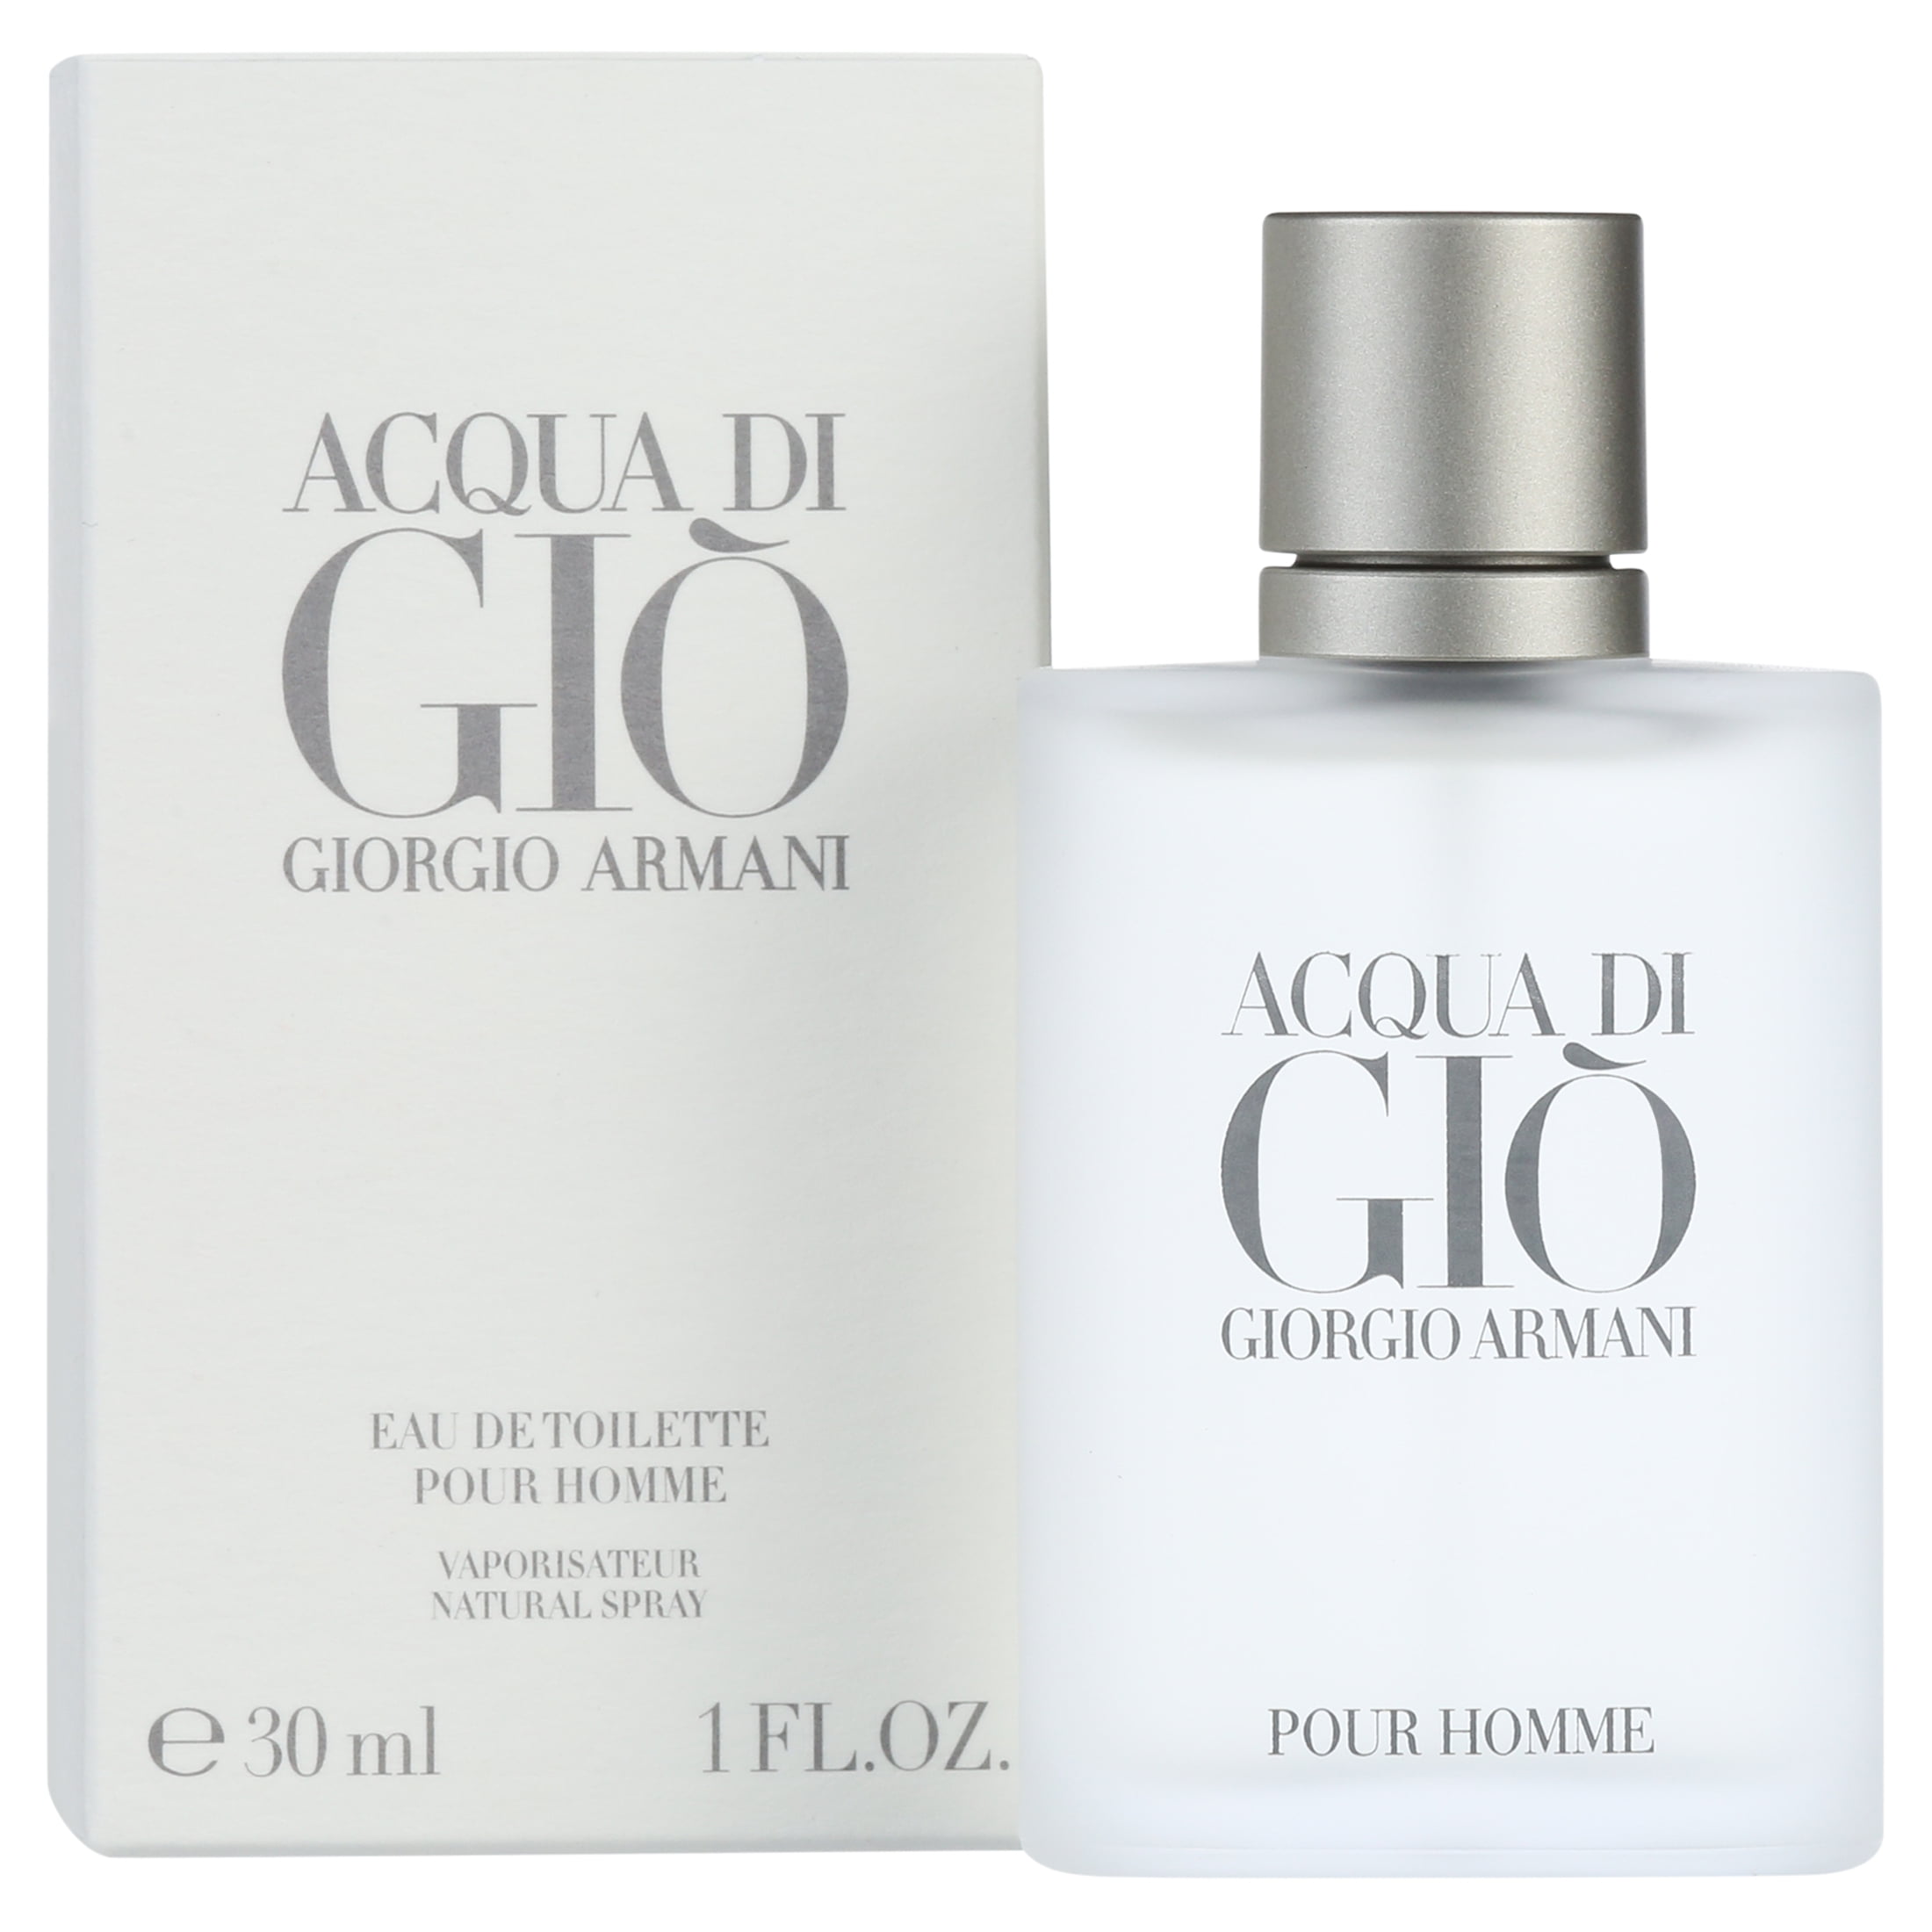 Giorgio Armani Acqua Di Gio Eau de Toilette, Cologne for Men, 1 oz - Walmart .com